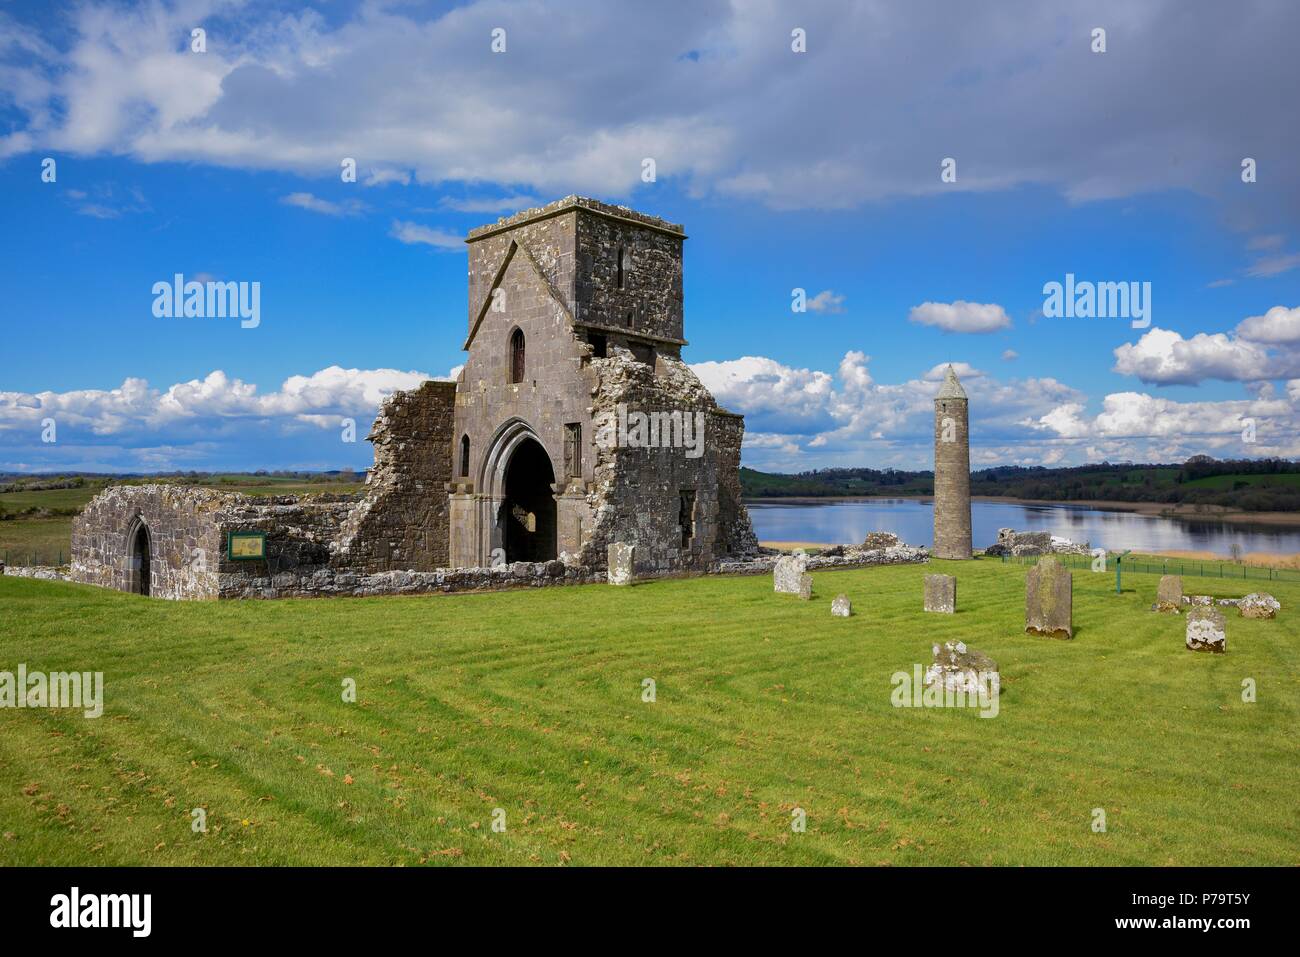 St Mary Convento Agostiniano, monastero agostiniano di St. Marien, Devenish Island, Lough Erne, County Fermanagh, Irlanda del Nord Foto Stock